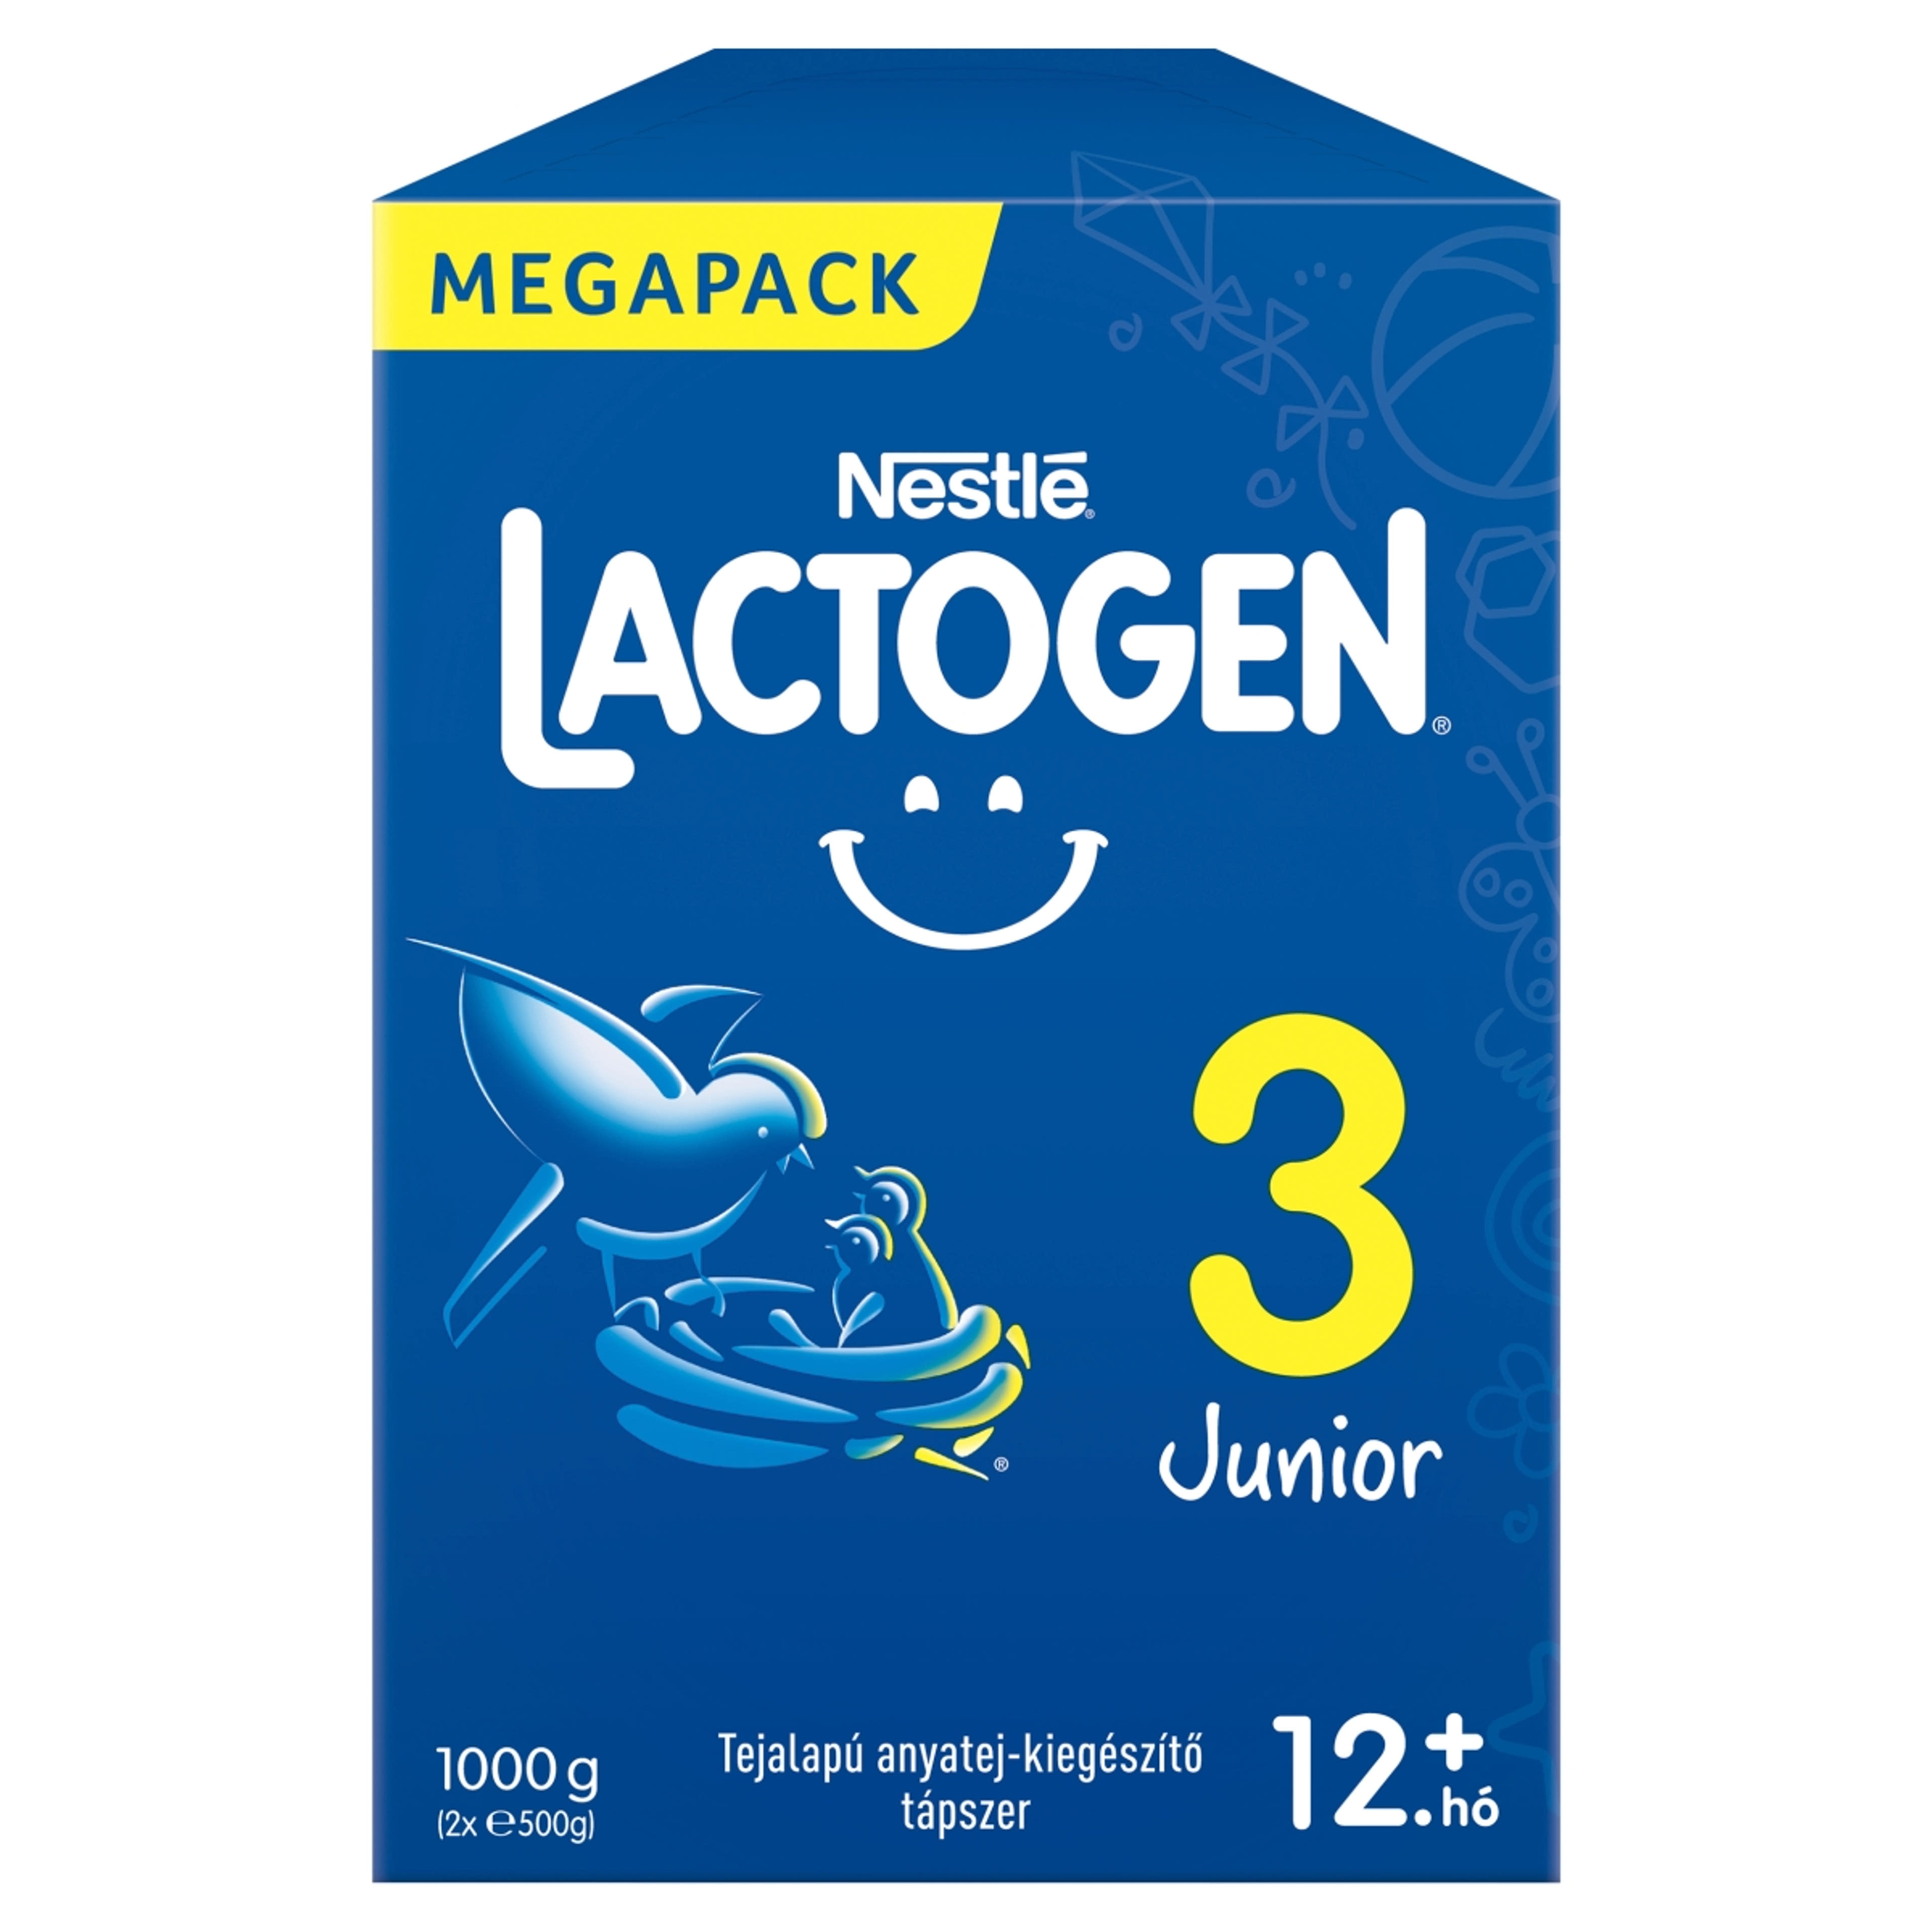 Lactogen 3 Junior tejalapú anyatej-kiegészítő tápszer 12 hónapos kortól - 1000 g-1